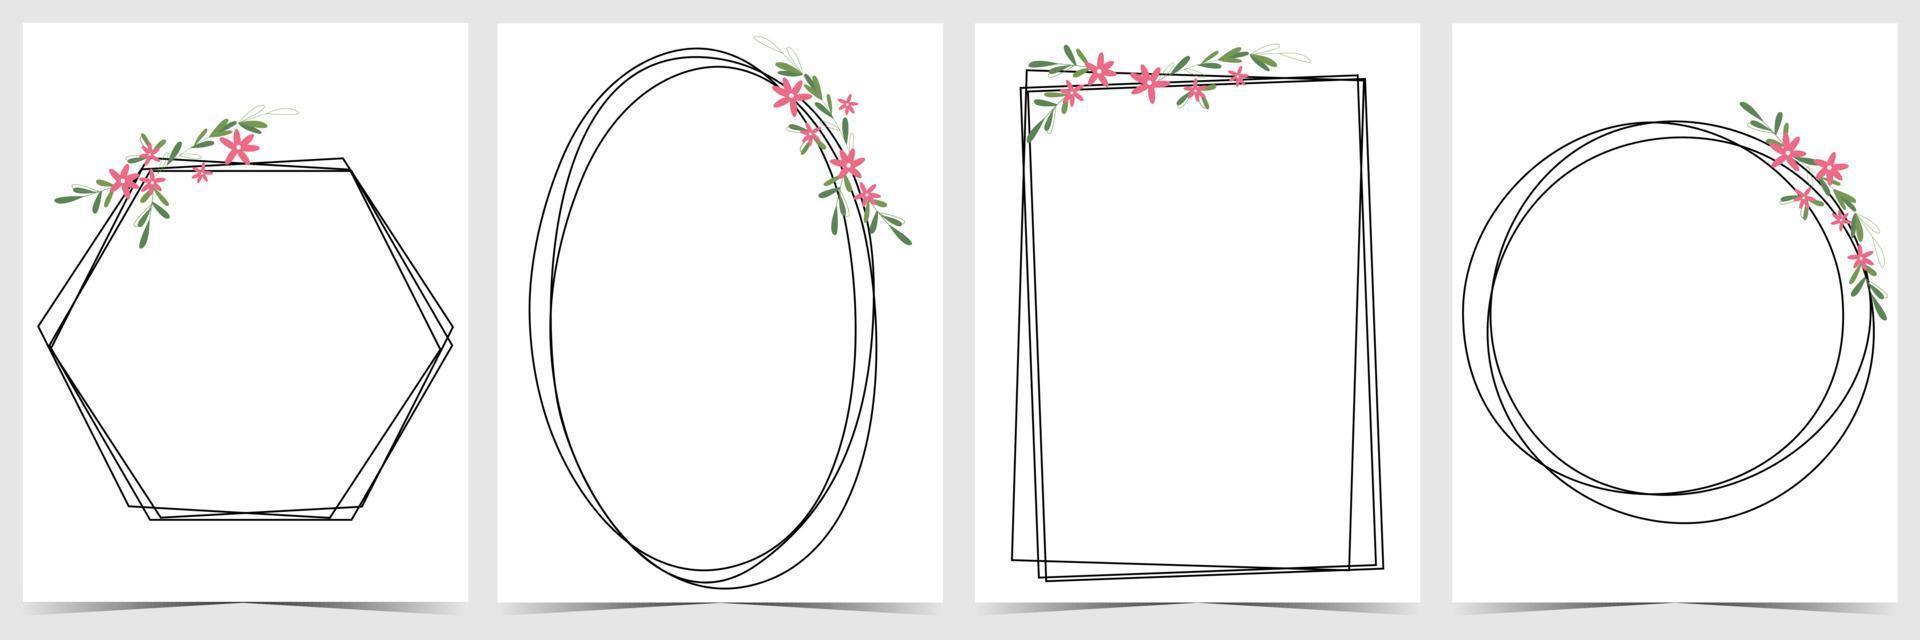 moldura de flores para fundo de convite de casamento ou cartão decorativo. modelo de ornamento de primavera e fundo de flores para postagens de mídia social, salve a data, convide. ilustração vetorial plana. vetor